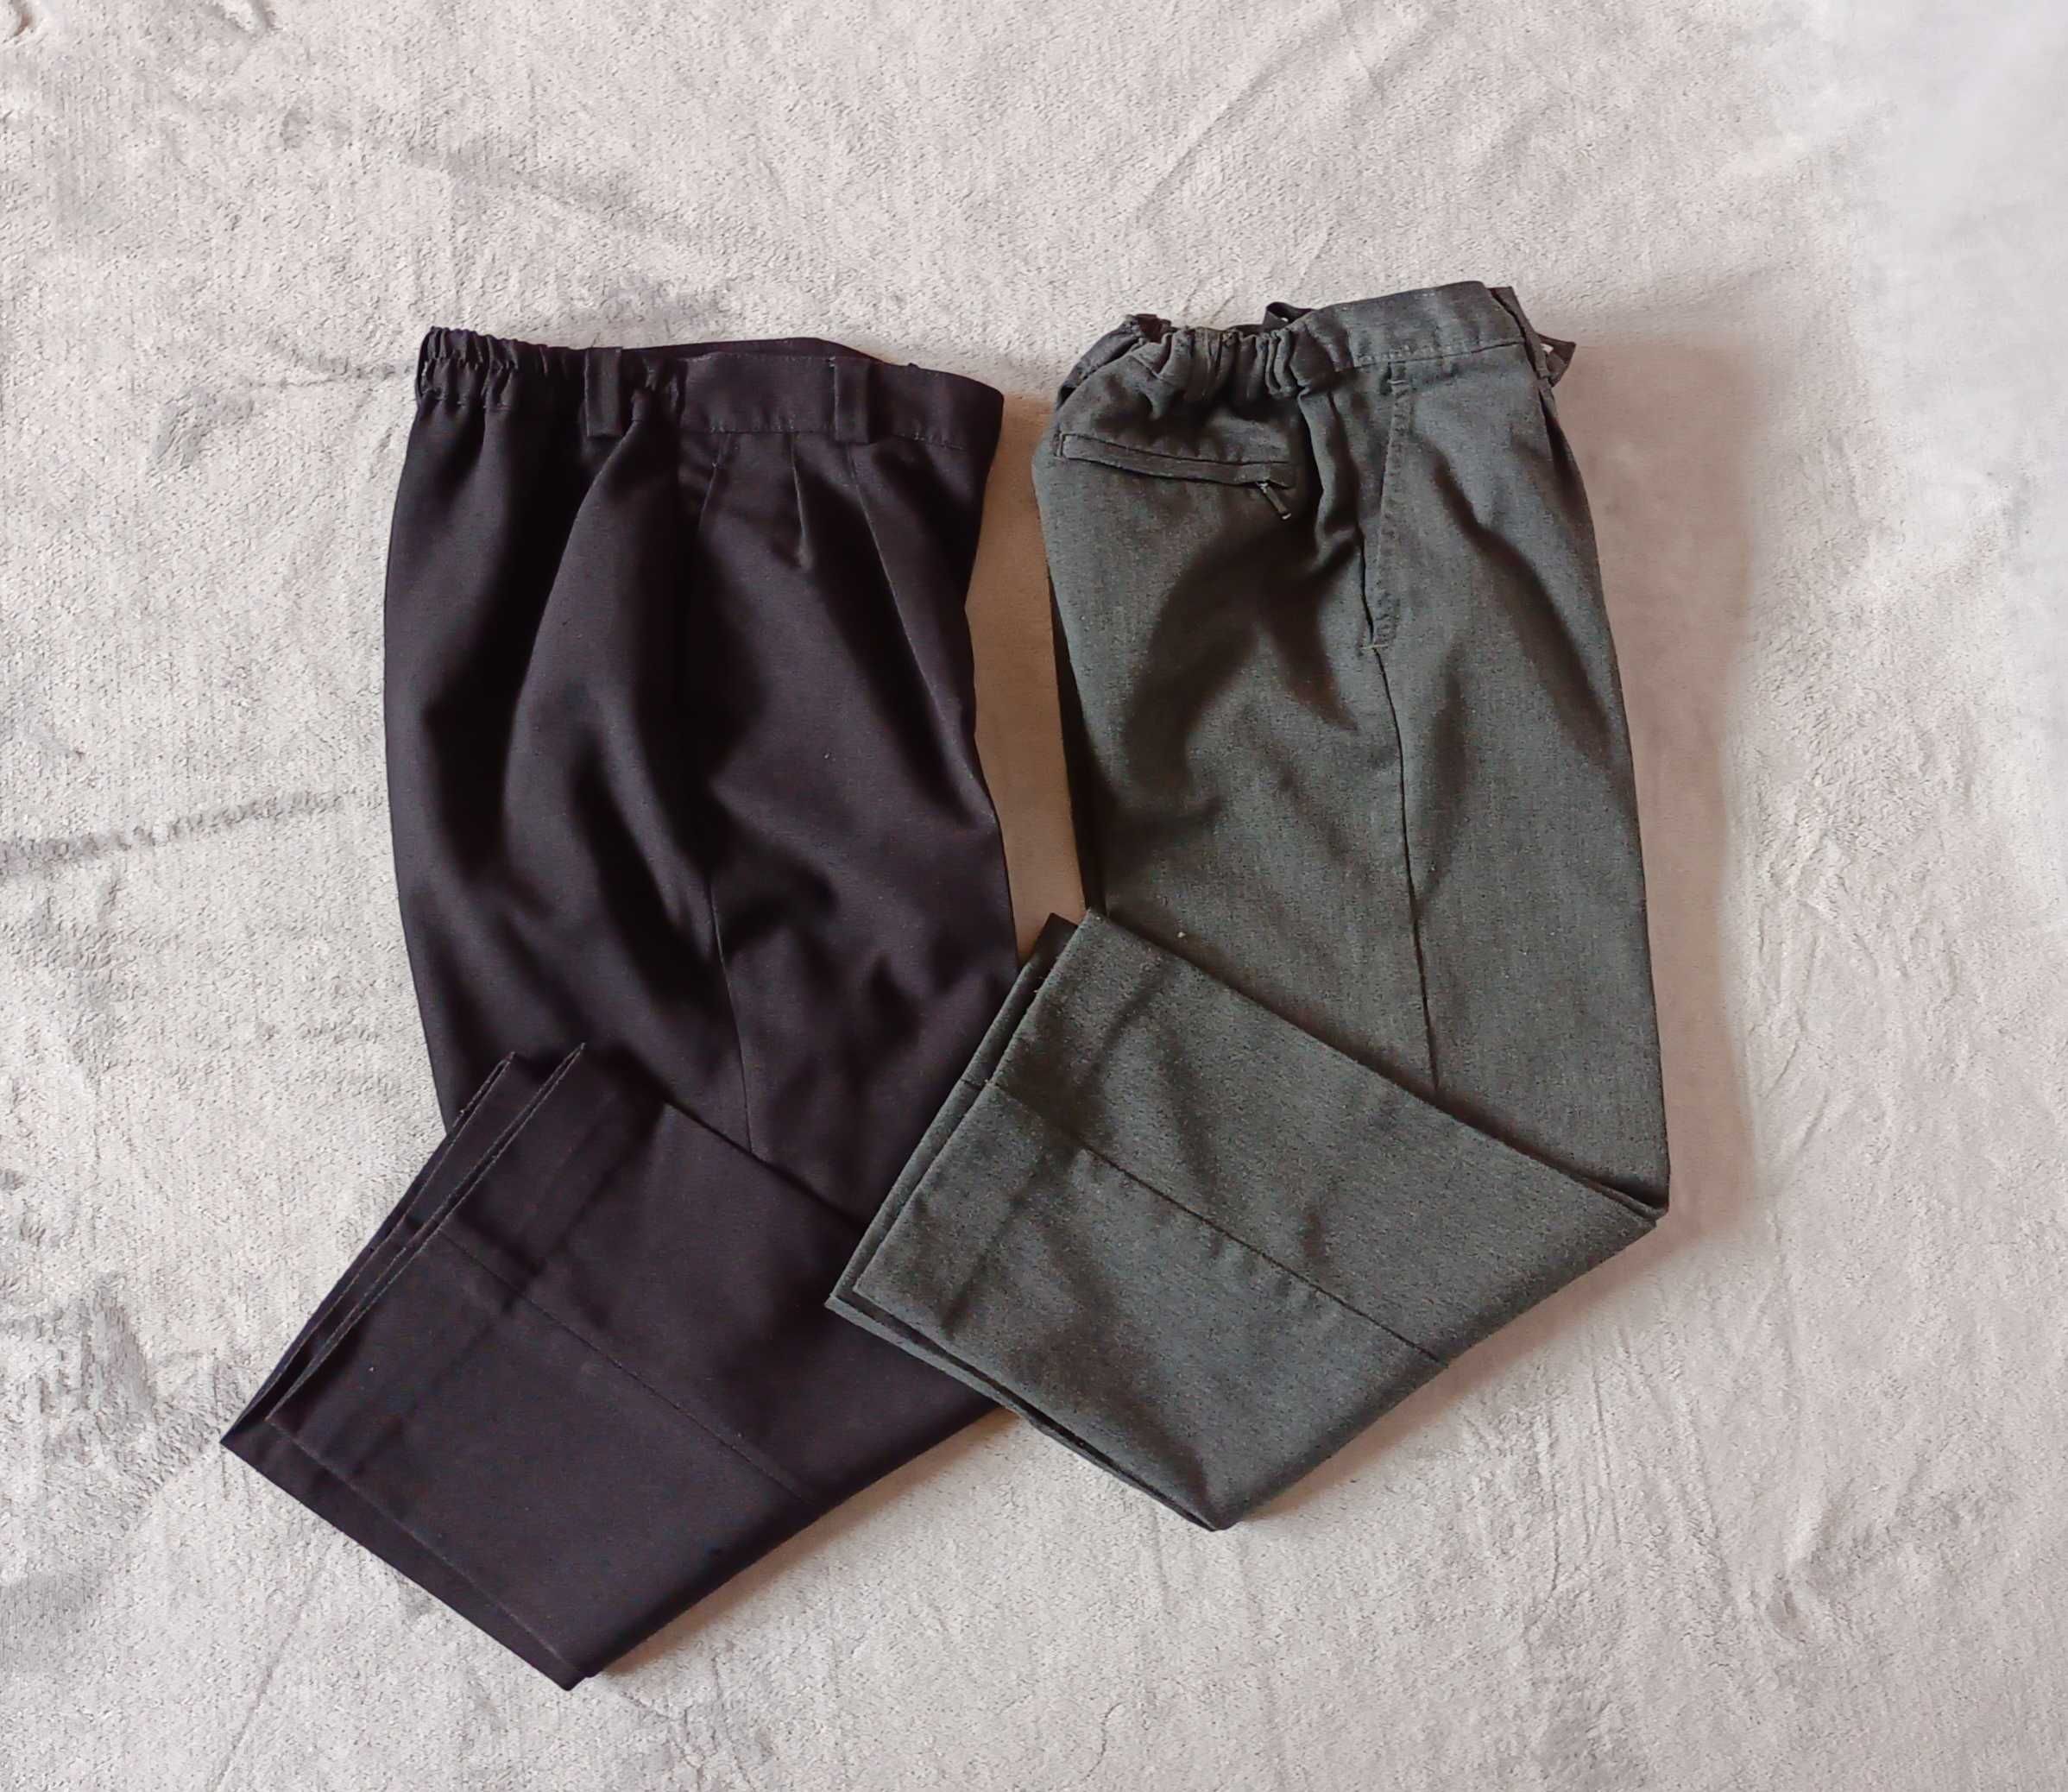 Spodnie chłopięce eleganckie w kant 2 pary roz. 116 - 122